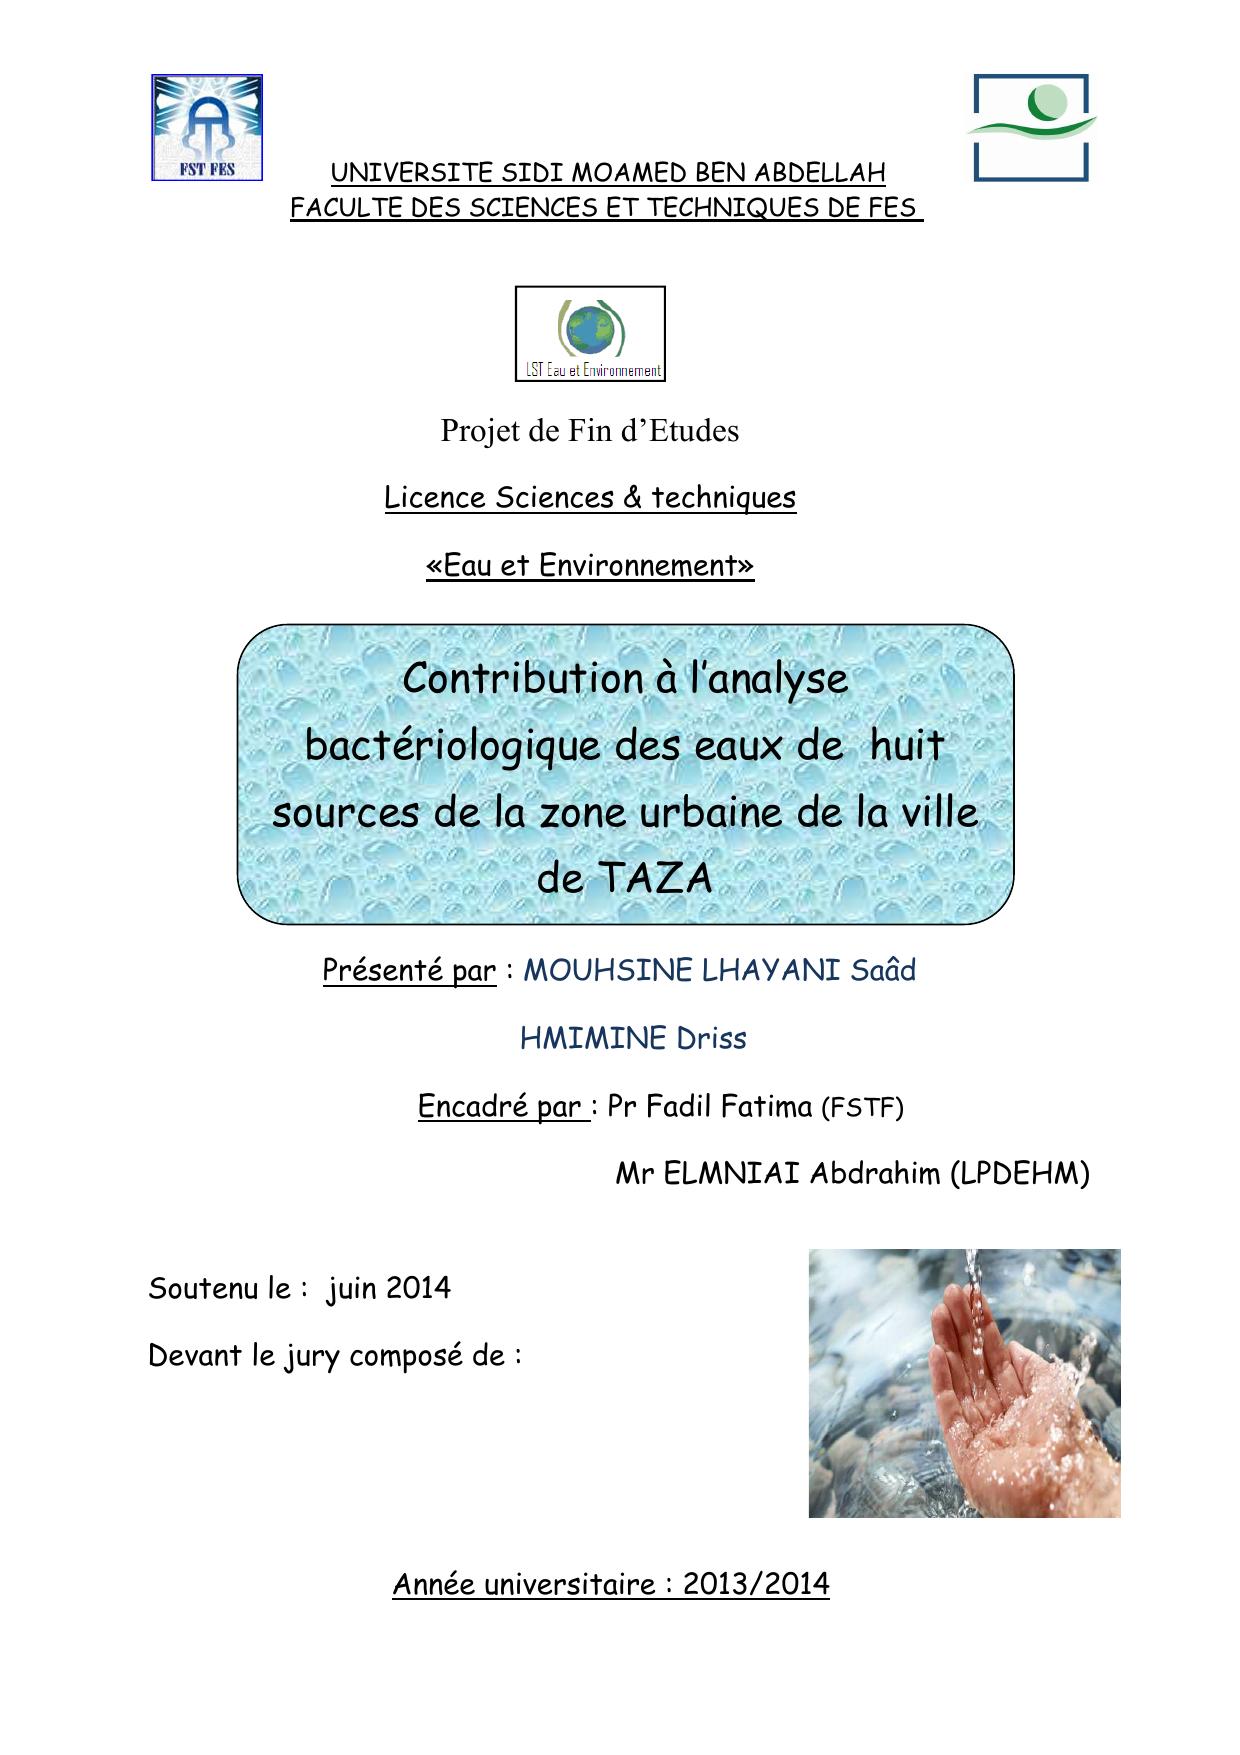 Contribution à l’analyse bactériologique des eaux de huit sources de la zone urbaine de la ville de TAZA